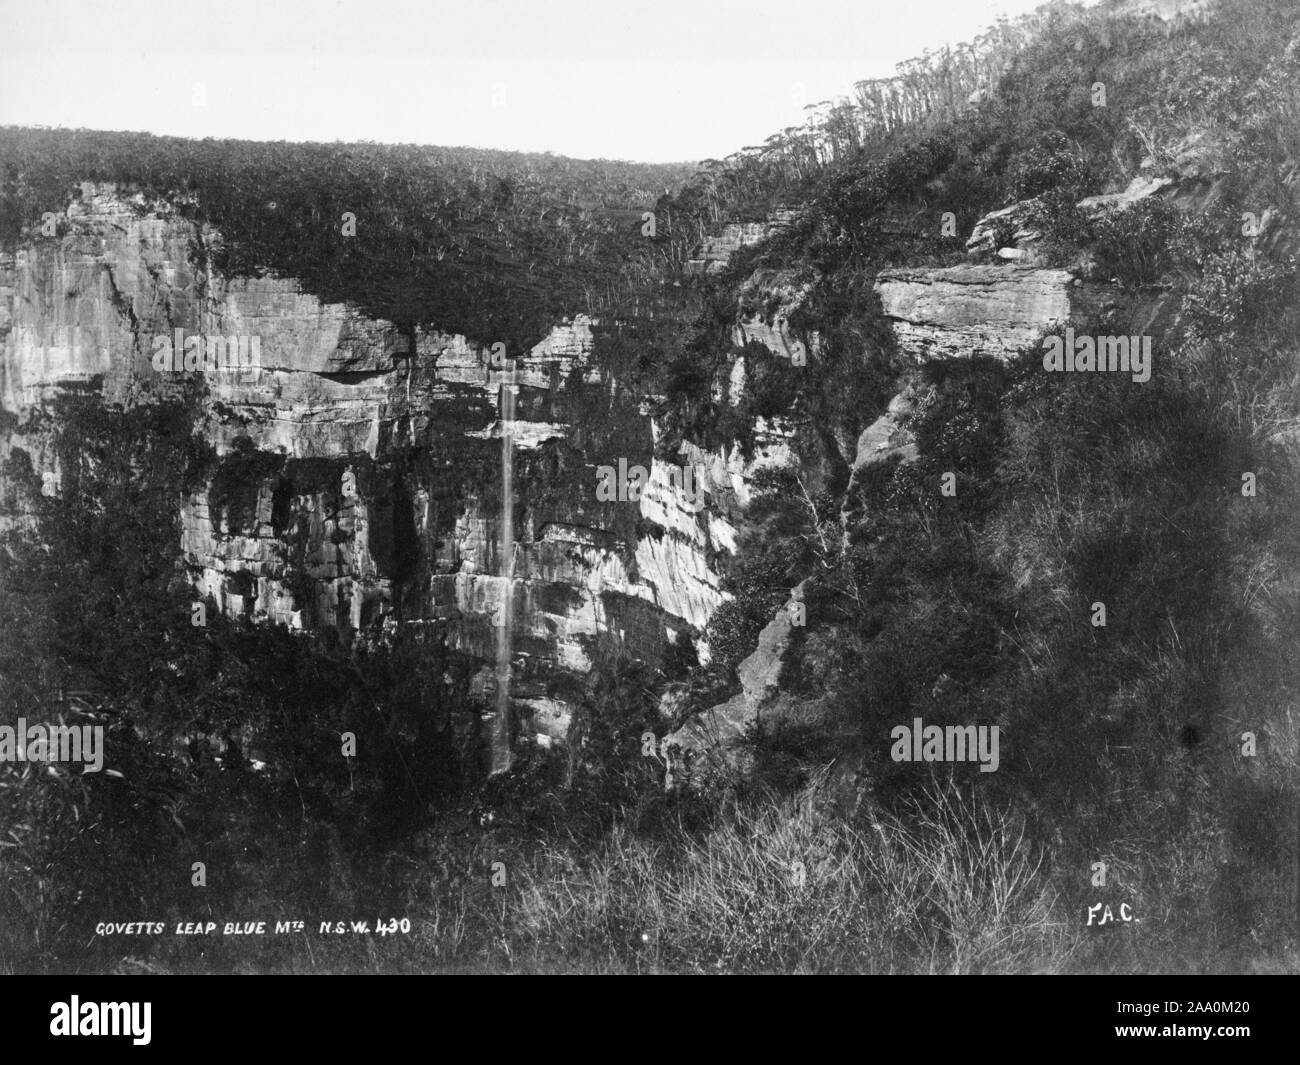 Paysage noir et blanc photographie de Govetts Leap dans la région des Montagnes Bleues de la Nouvelle Galles du Sud, Australie, New York, par le photographe Frank Coxhead, 1885. À partir de la Bibliothèque publique de New York. () Banque D'Images